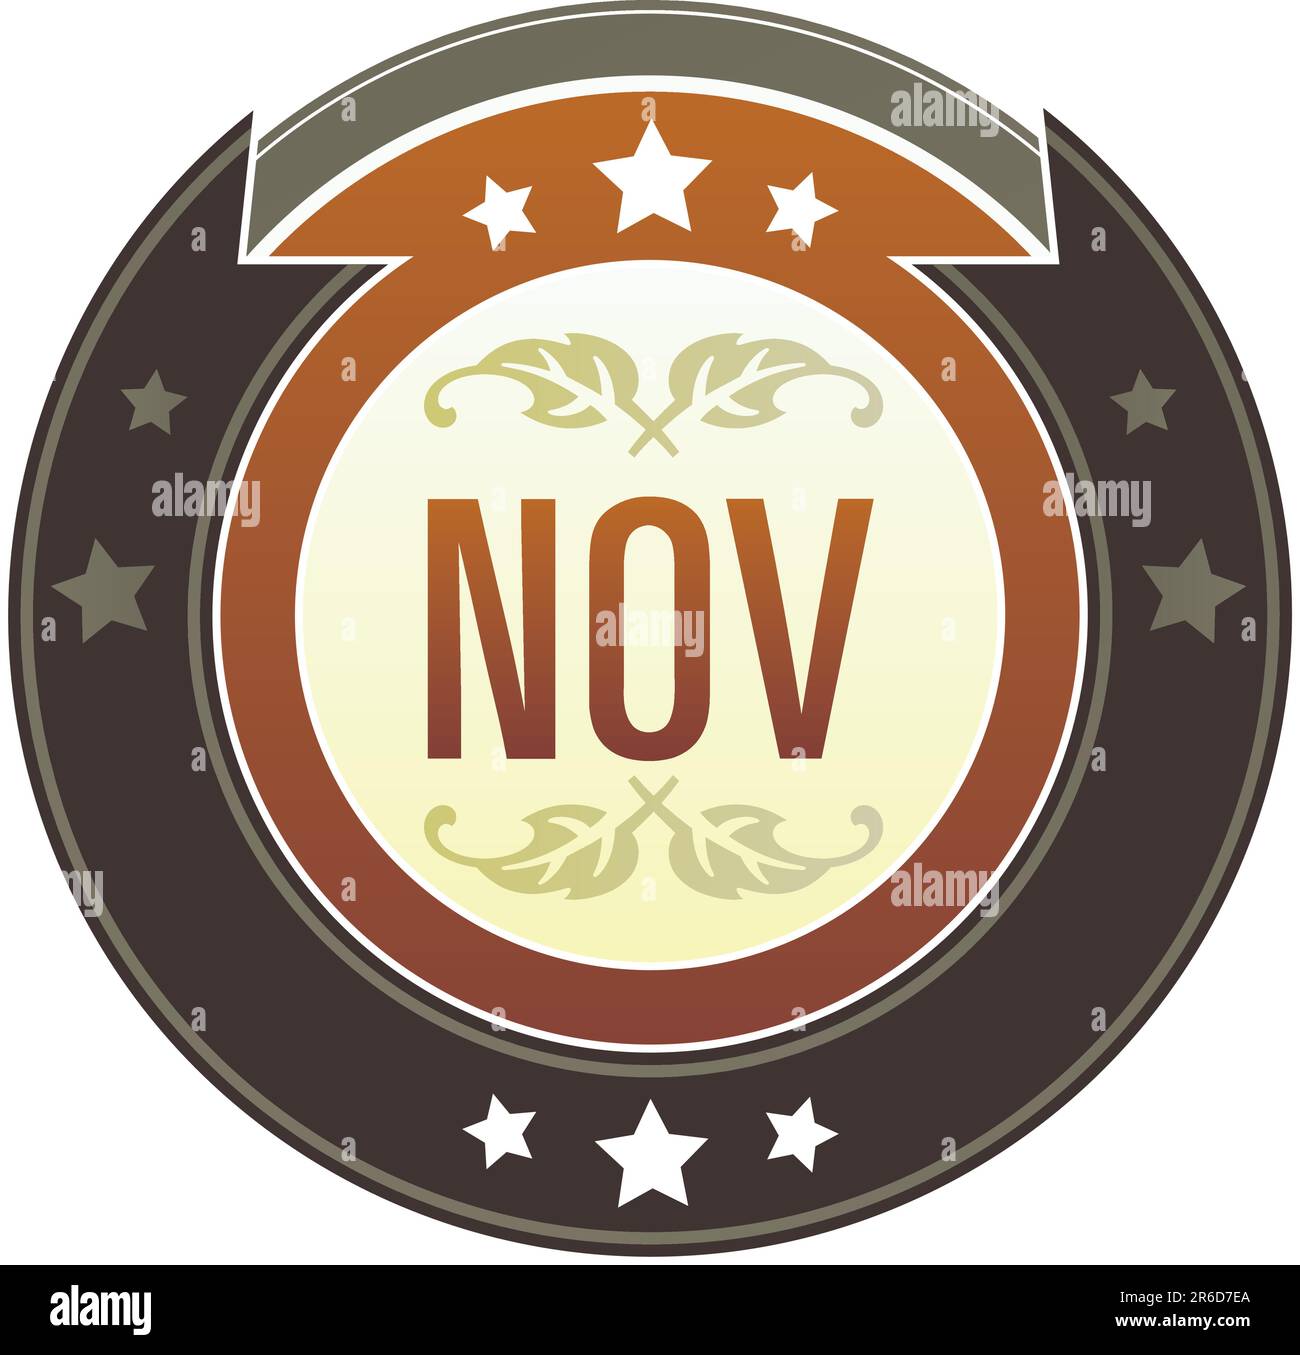 Kalendersymbol für November auf rundem rot-braunem kaiserlichen Vektorknopf mit Sternakzenten geeignet für die Verwendung auf der Website, in Printmedien und Werbespots ... Stock Vektor